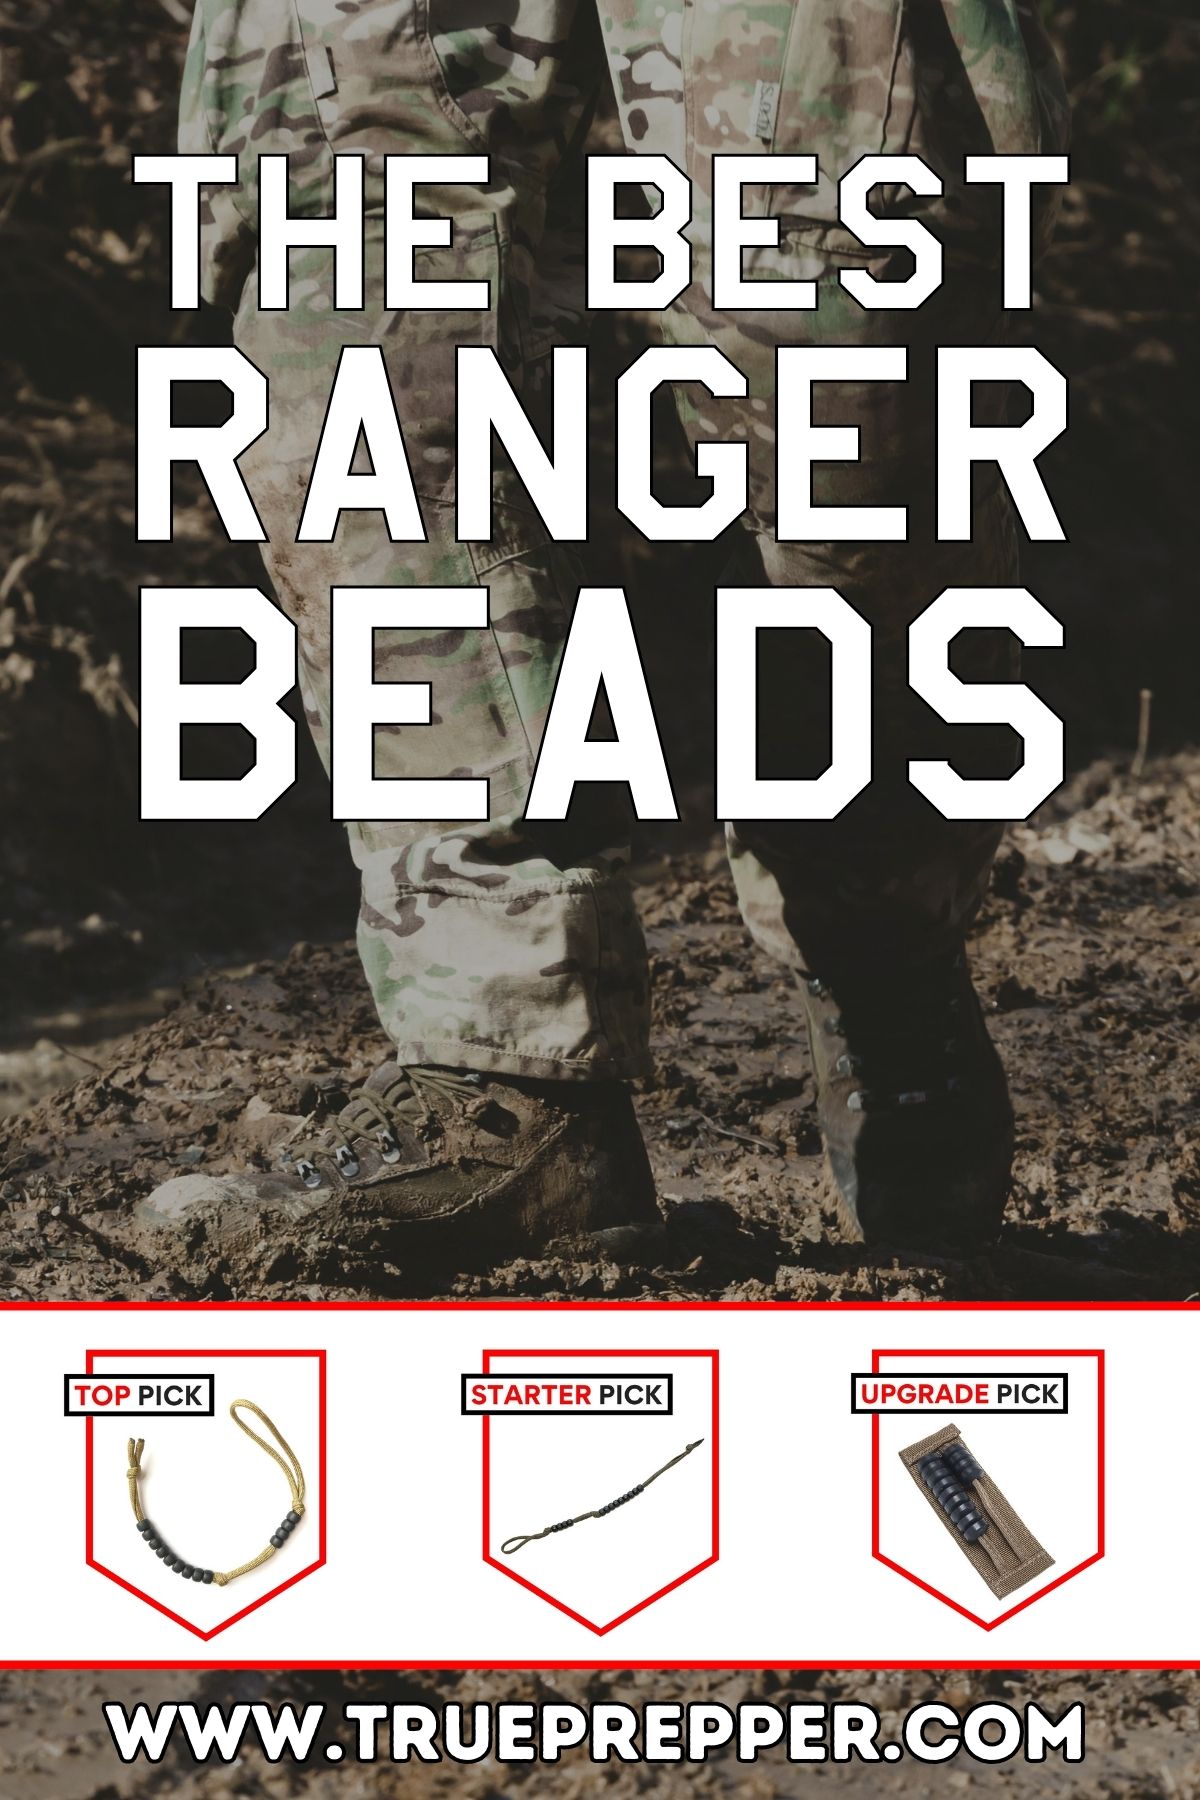 TPC Gear Pace Beads / Ranger Beads